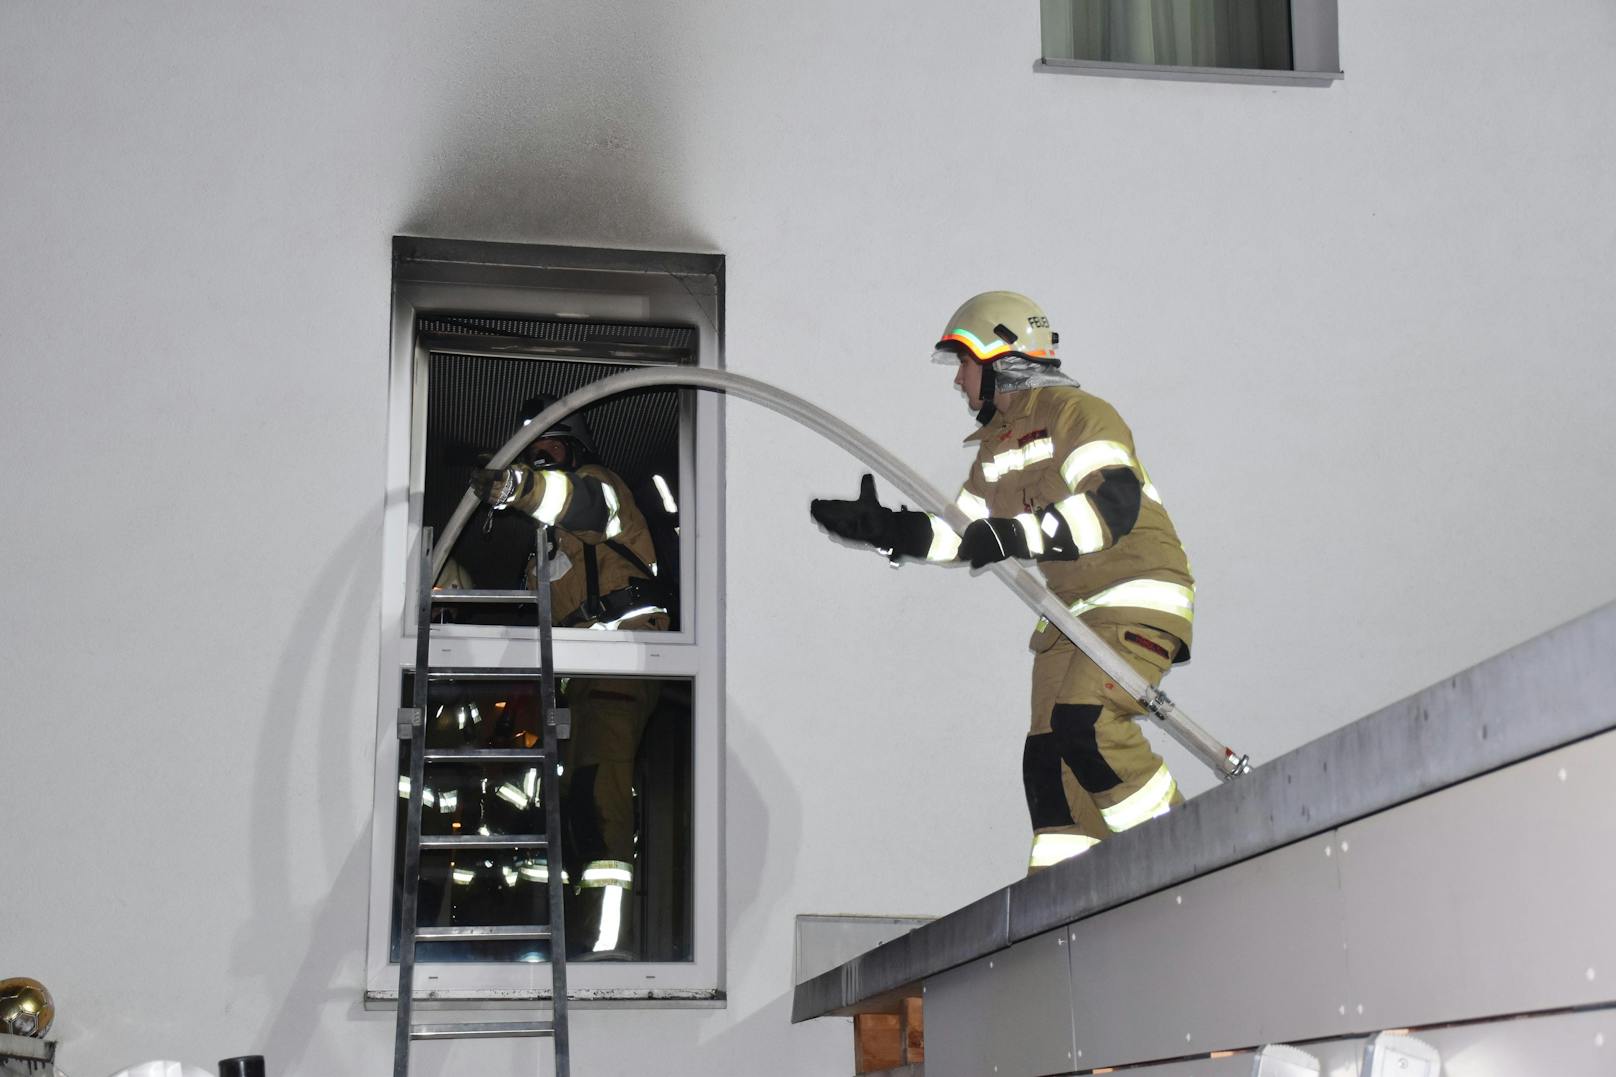 Als die Feuerwehr am Einsatzort eintraf, standen Teile des Zimmers bereits in Flammen. Das Feuer wurde gelöscht, die Wohngemeinschaft war nach dem Brand aber nicht mehr bewohnbar.